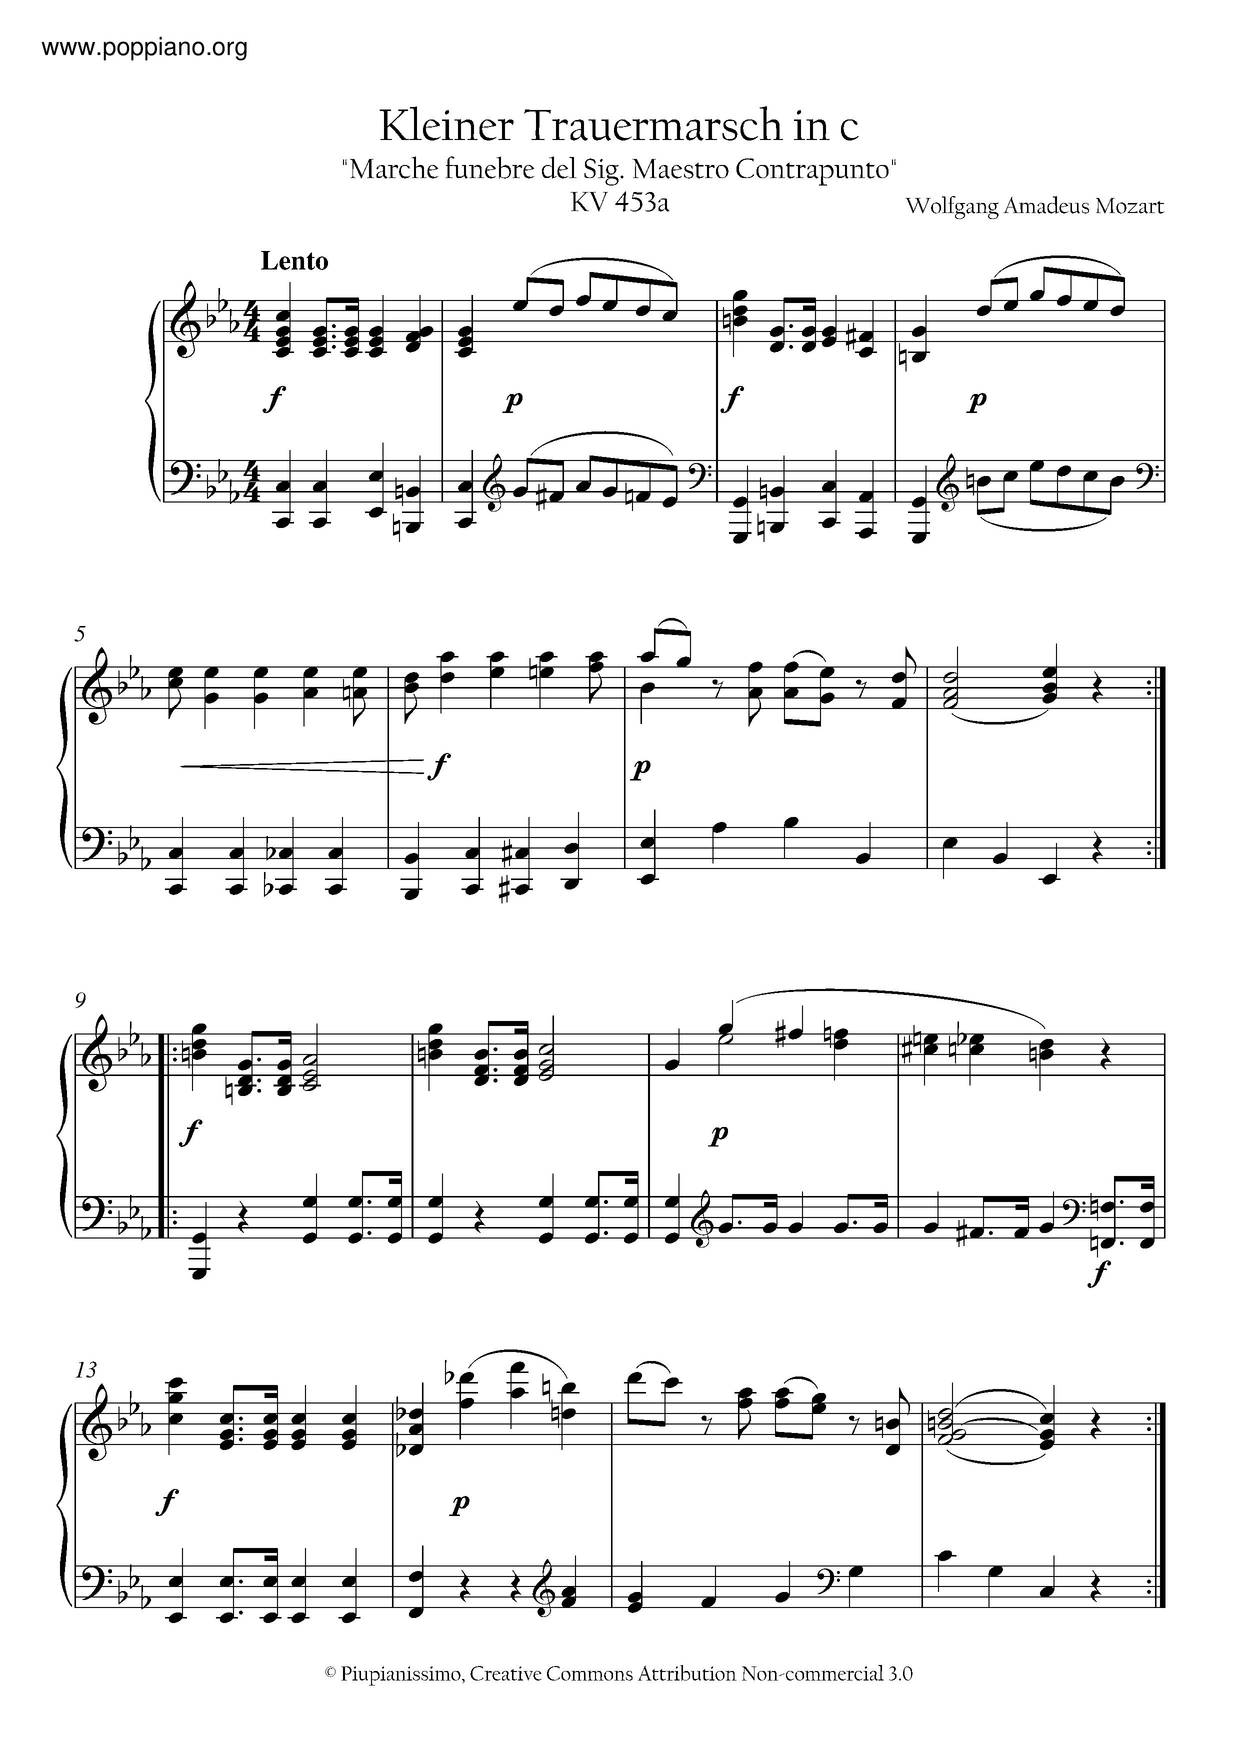 Kleiner Trauermarsch In C Minor, K. 453A Score